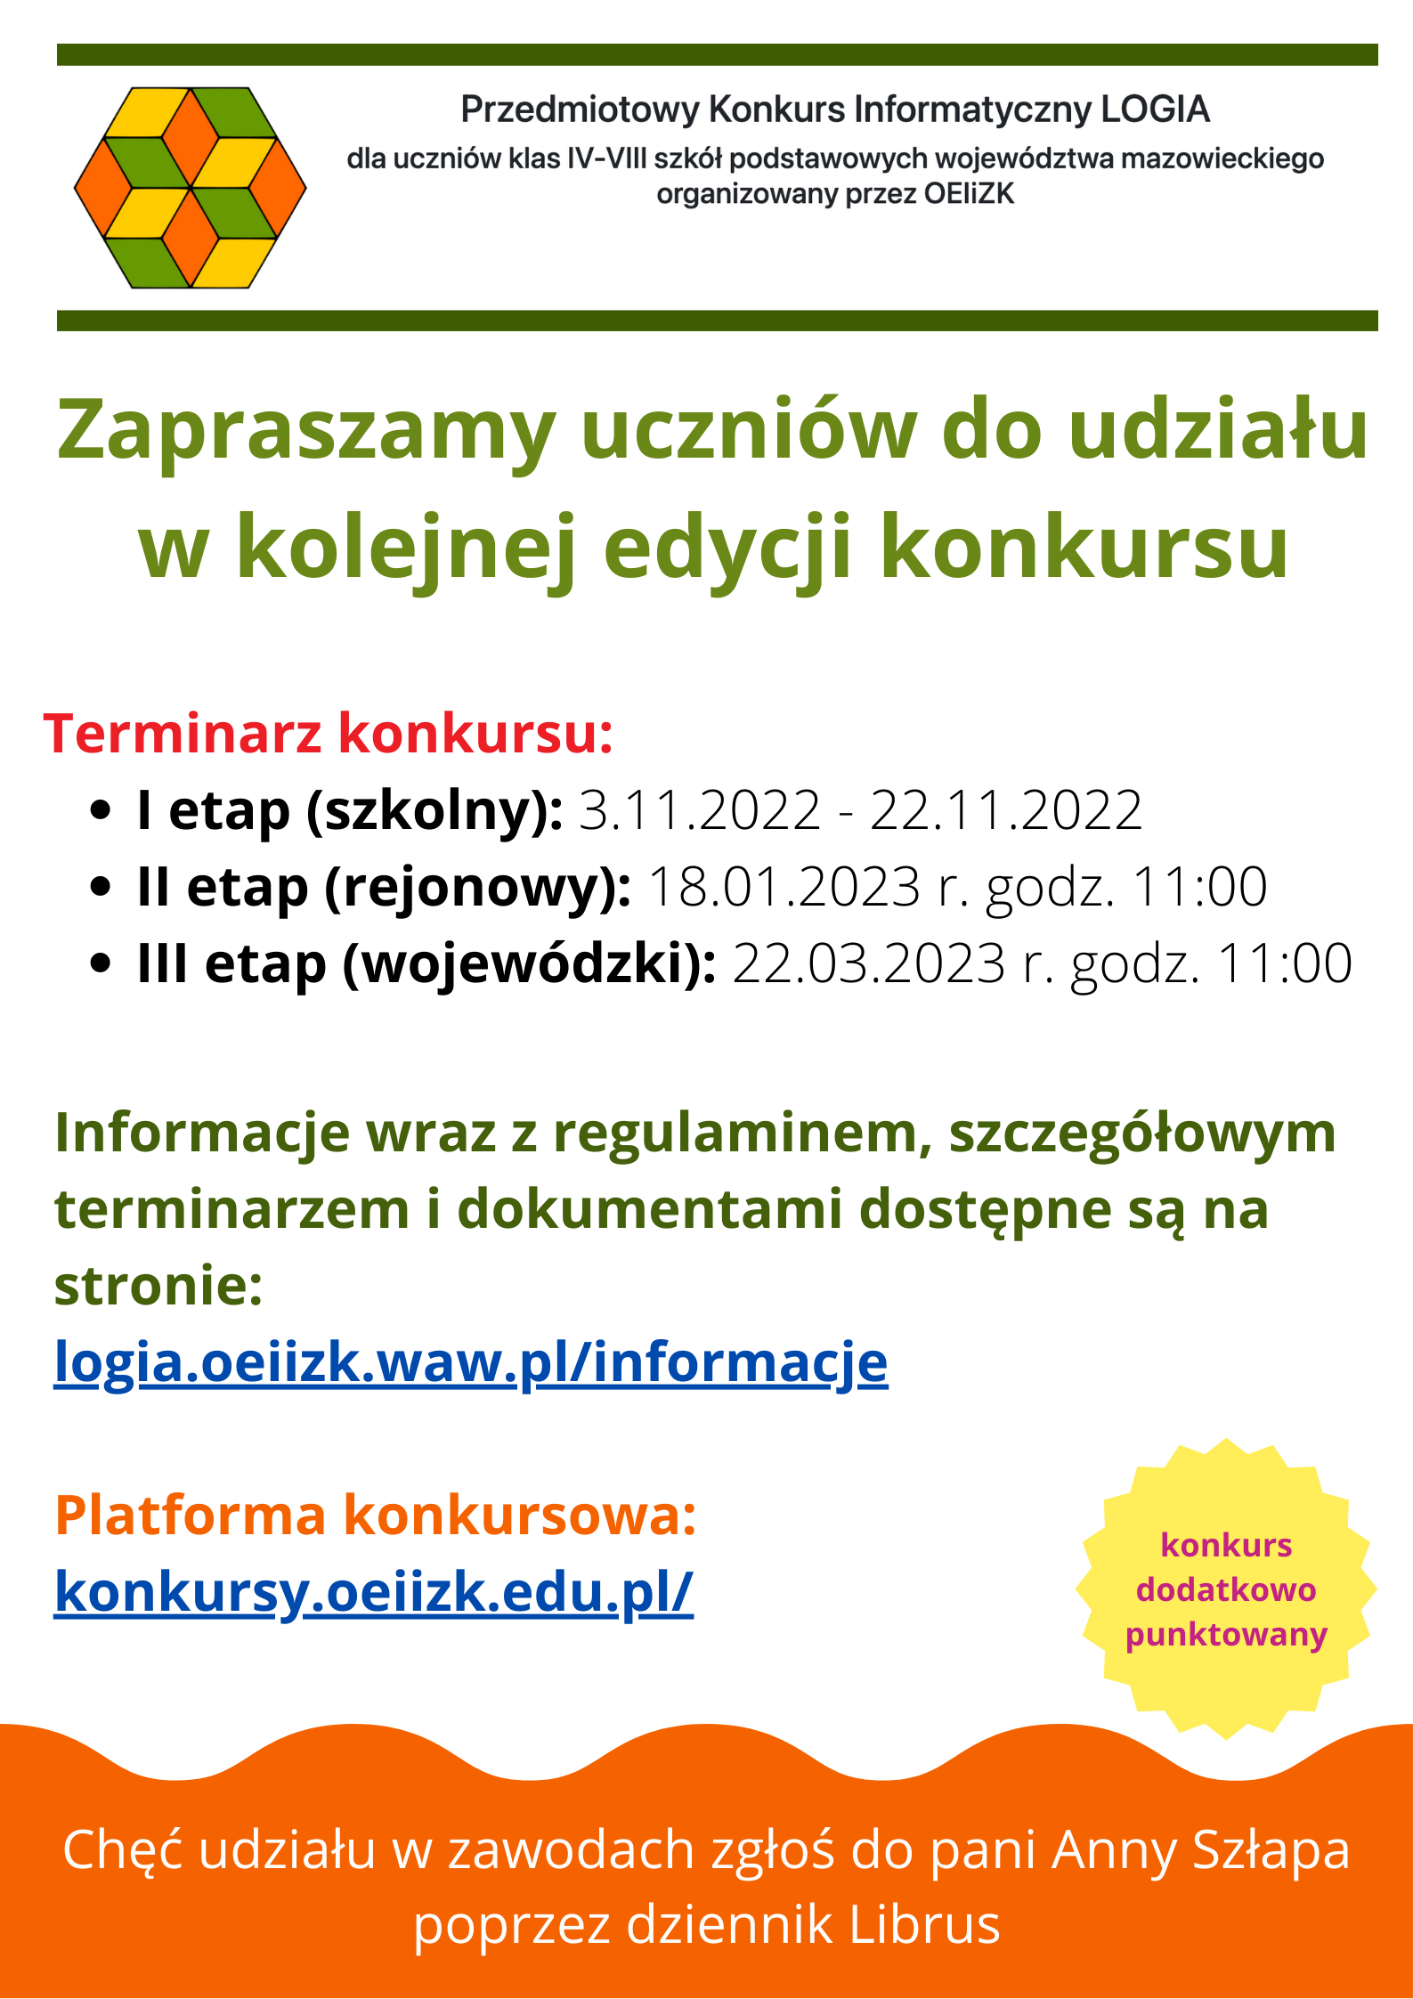 Plakat informacyjny o Przedmiotowym Konkursie Informatycznym LOGIA 2022